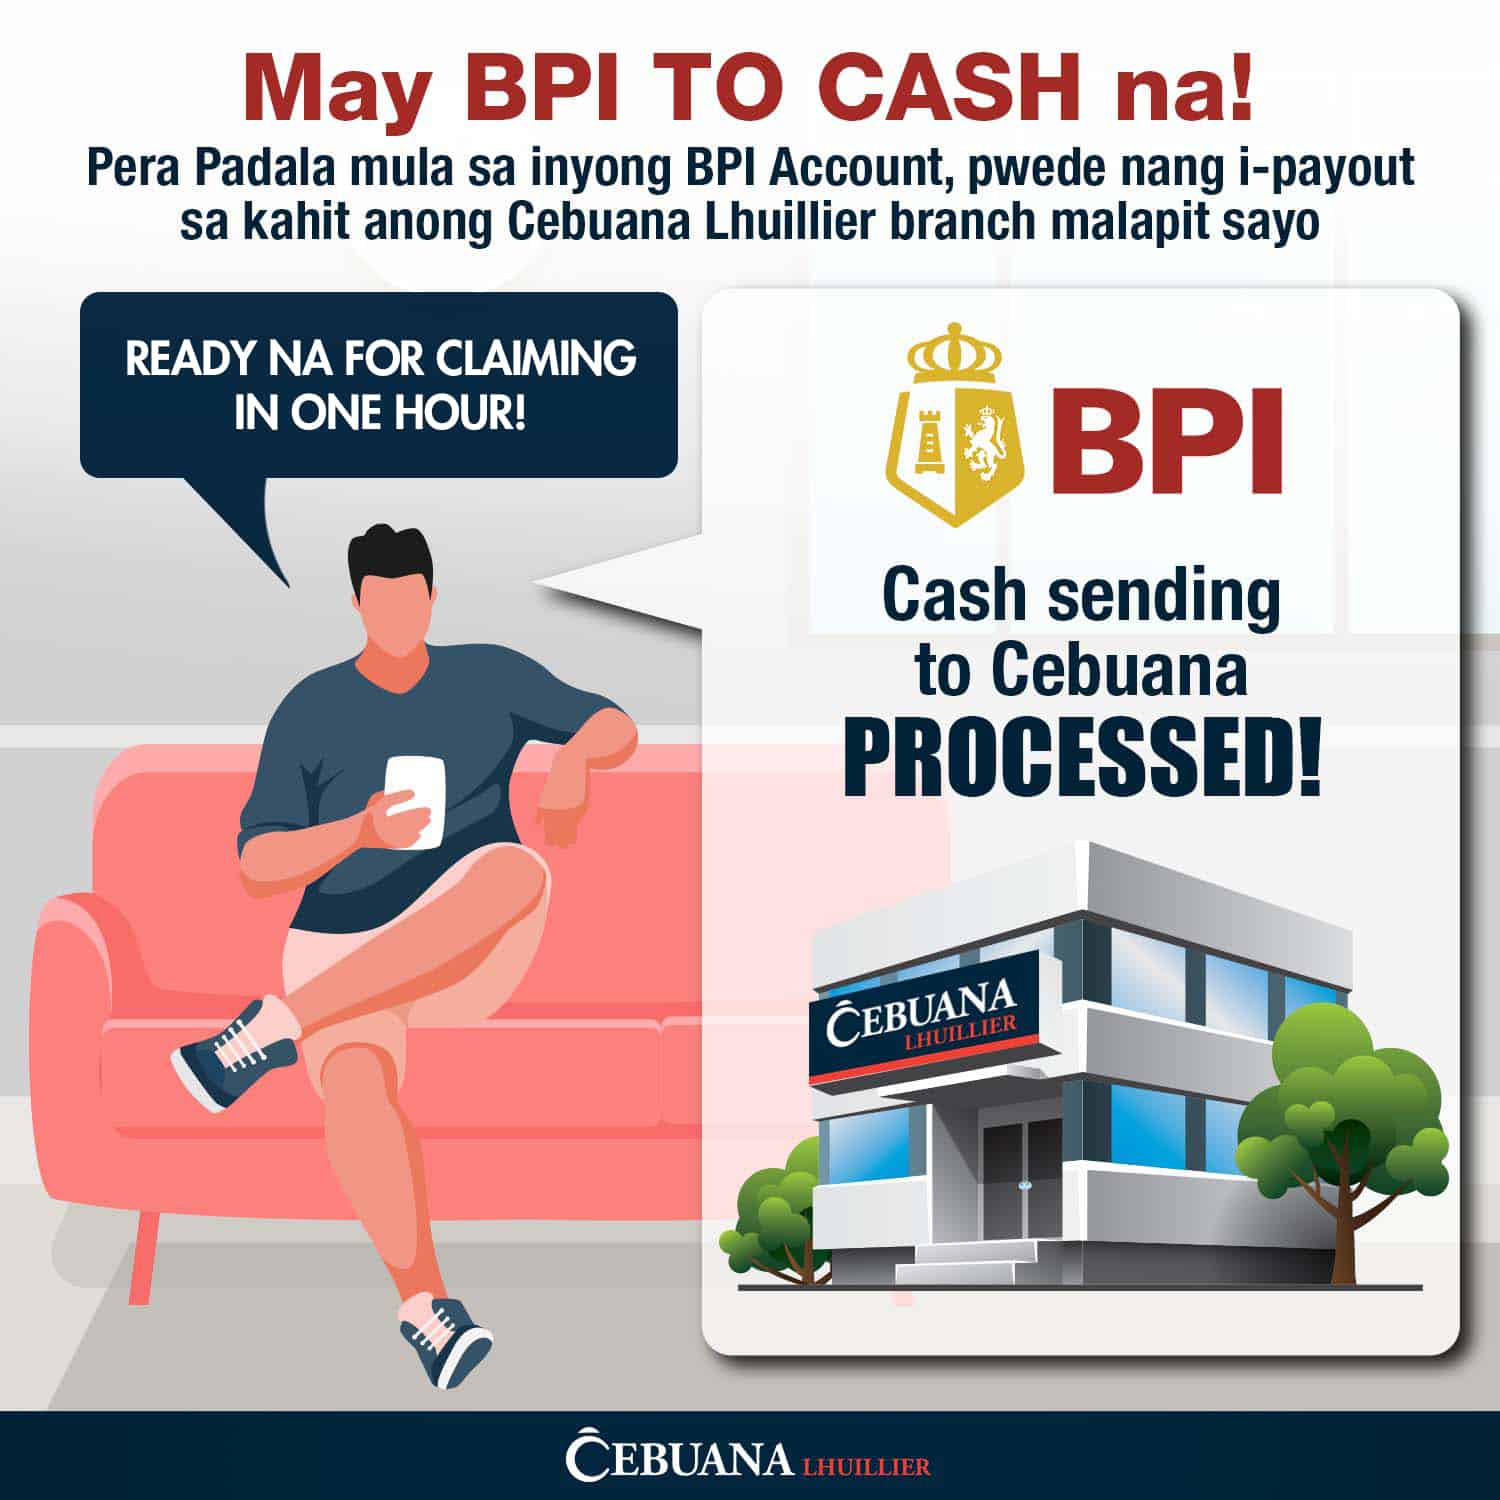 Cebuana Lhuillier Partnership with BPI (BPI to Cash)